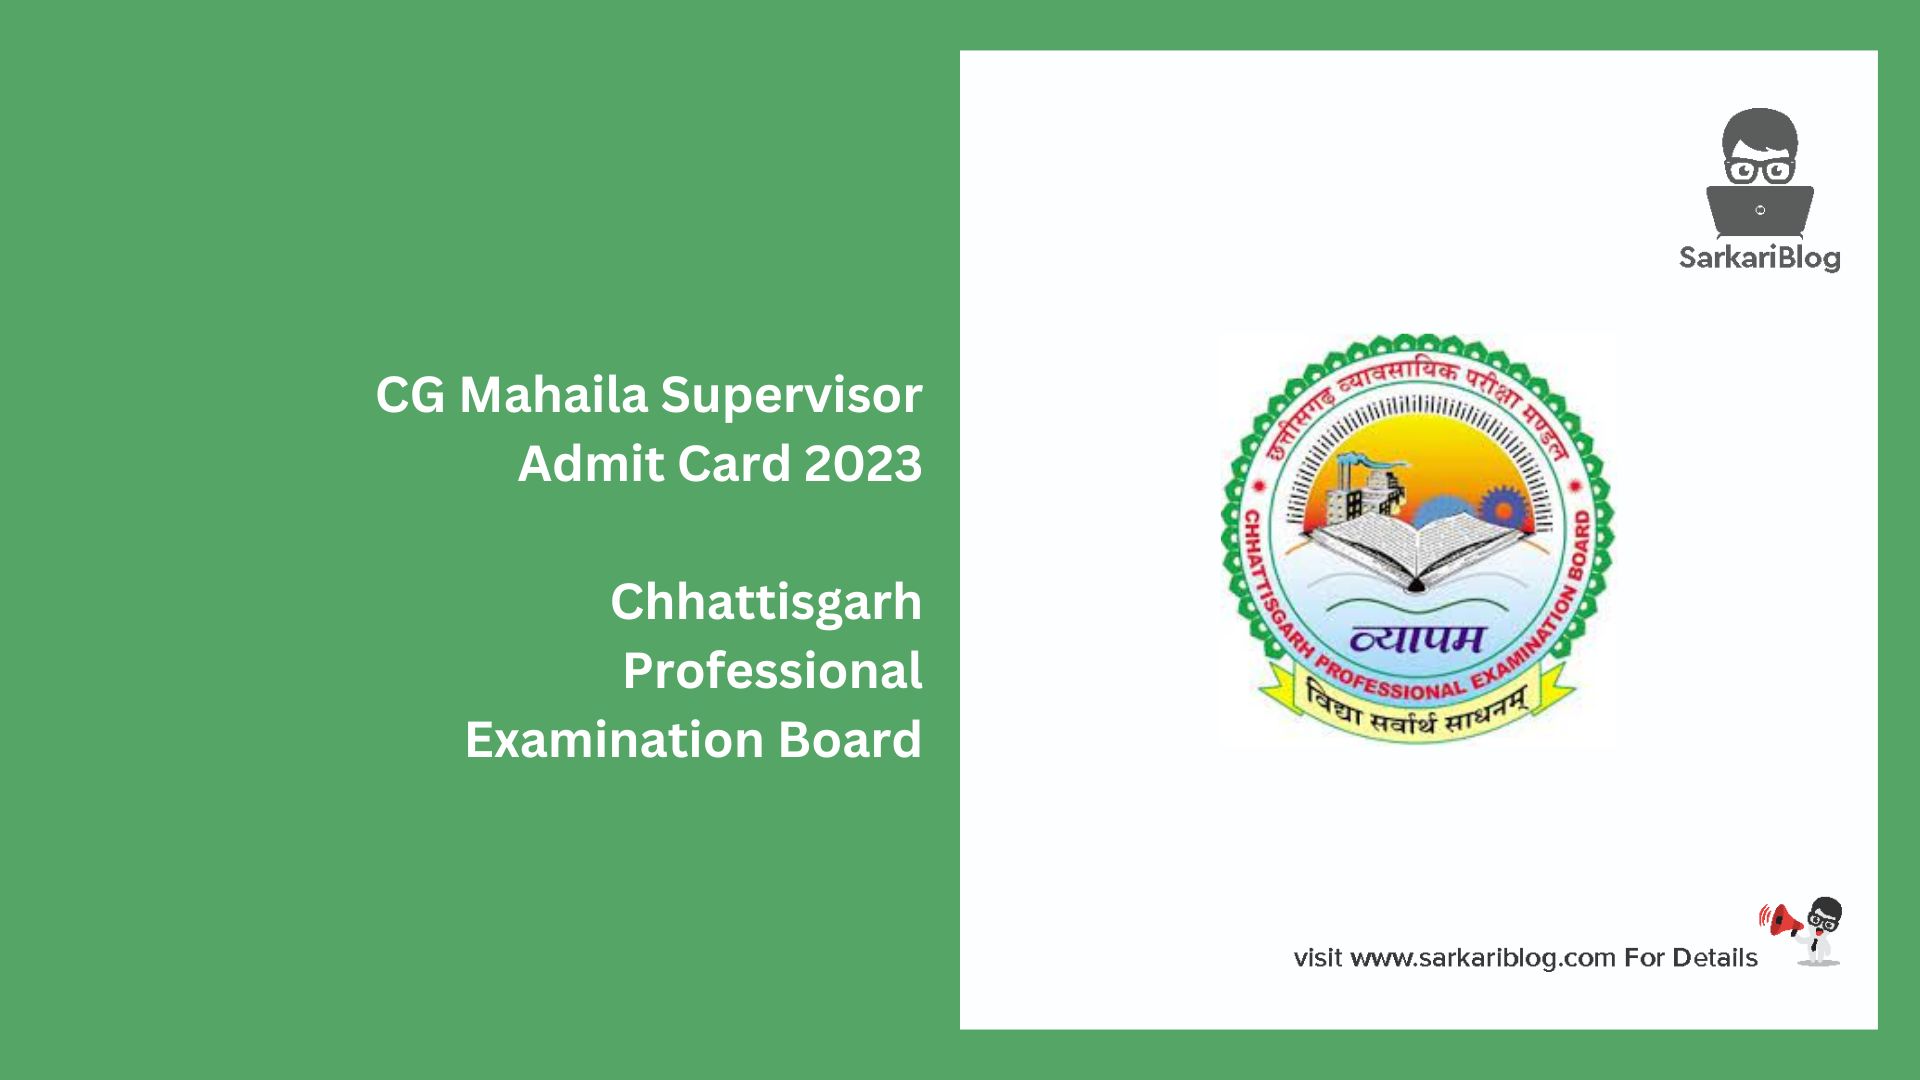 CG Mahaila Supervisor Admit Card 2023